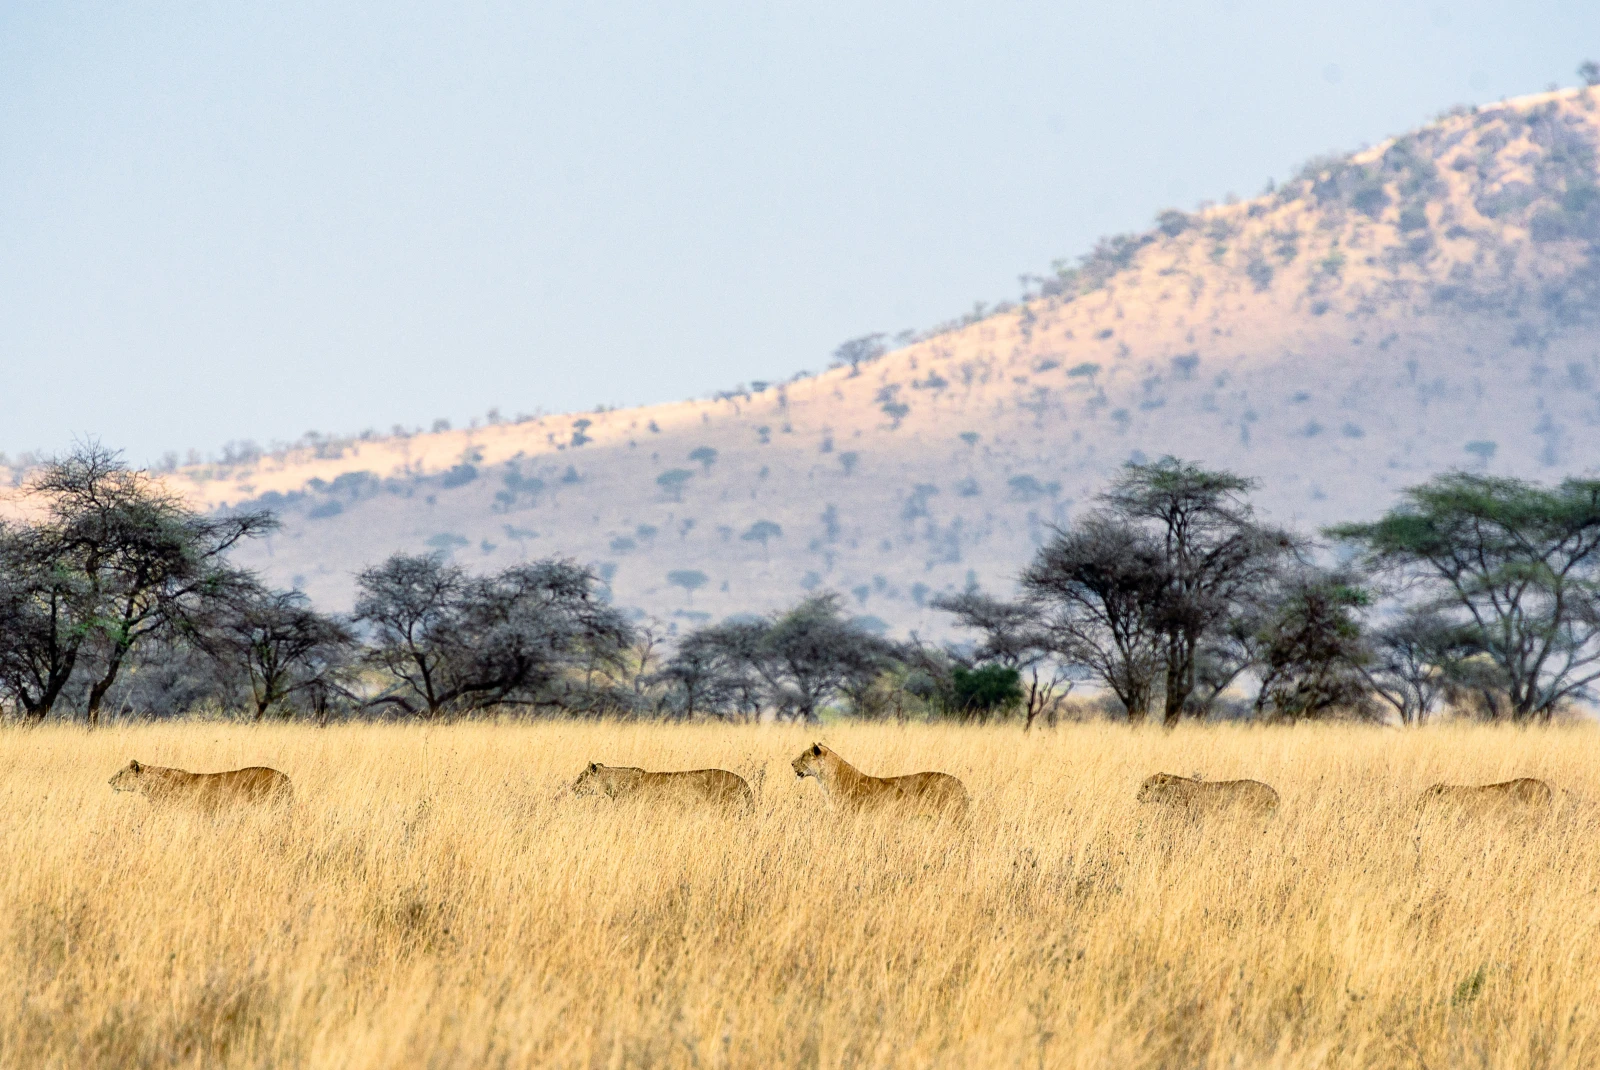 Safari in the Serengeti, Tanzania